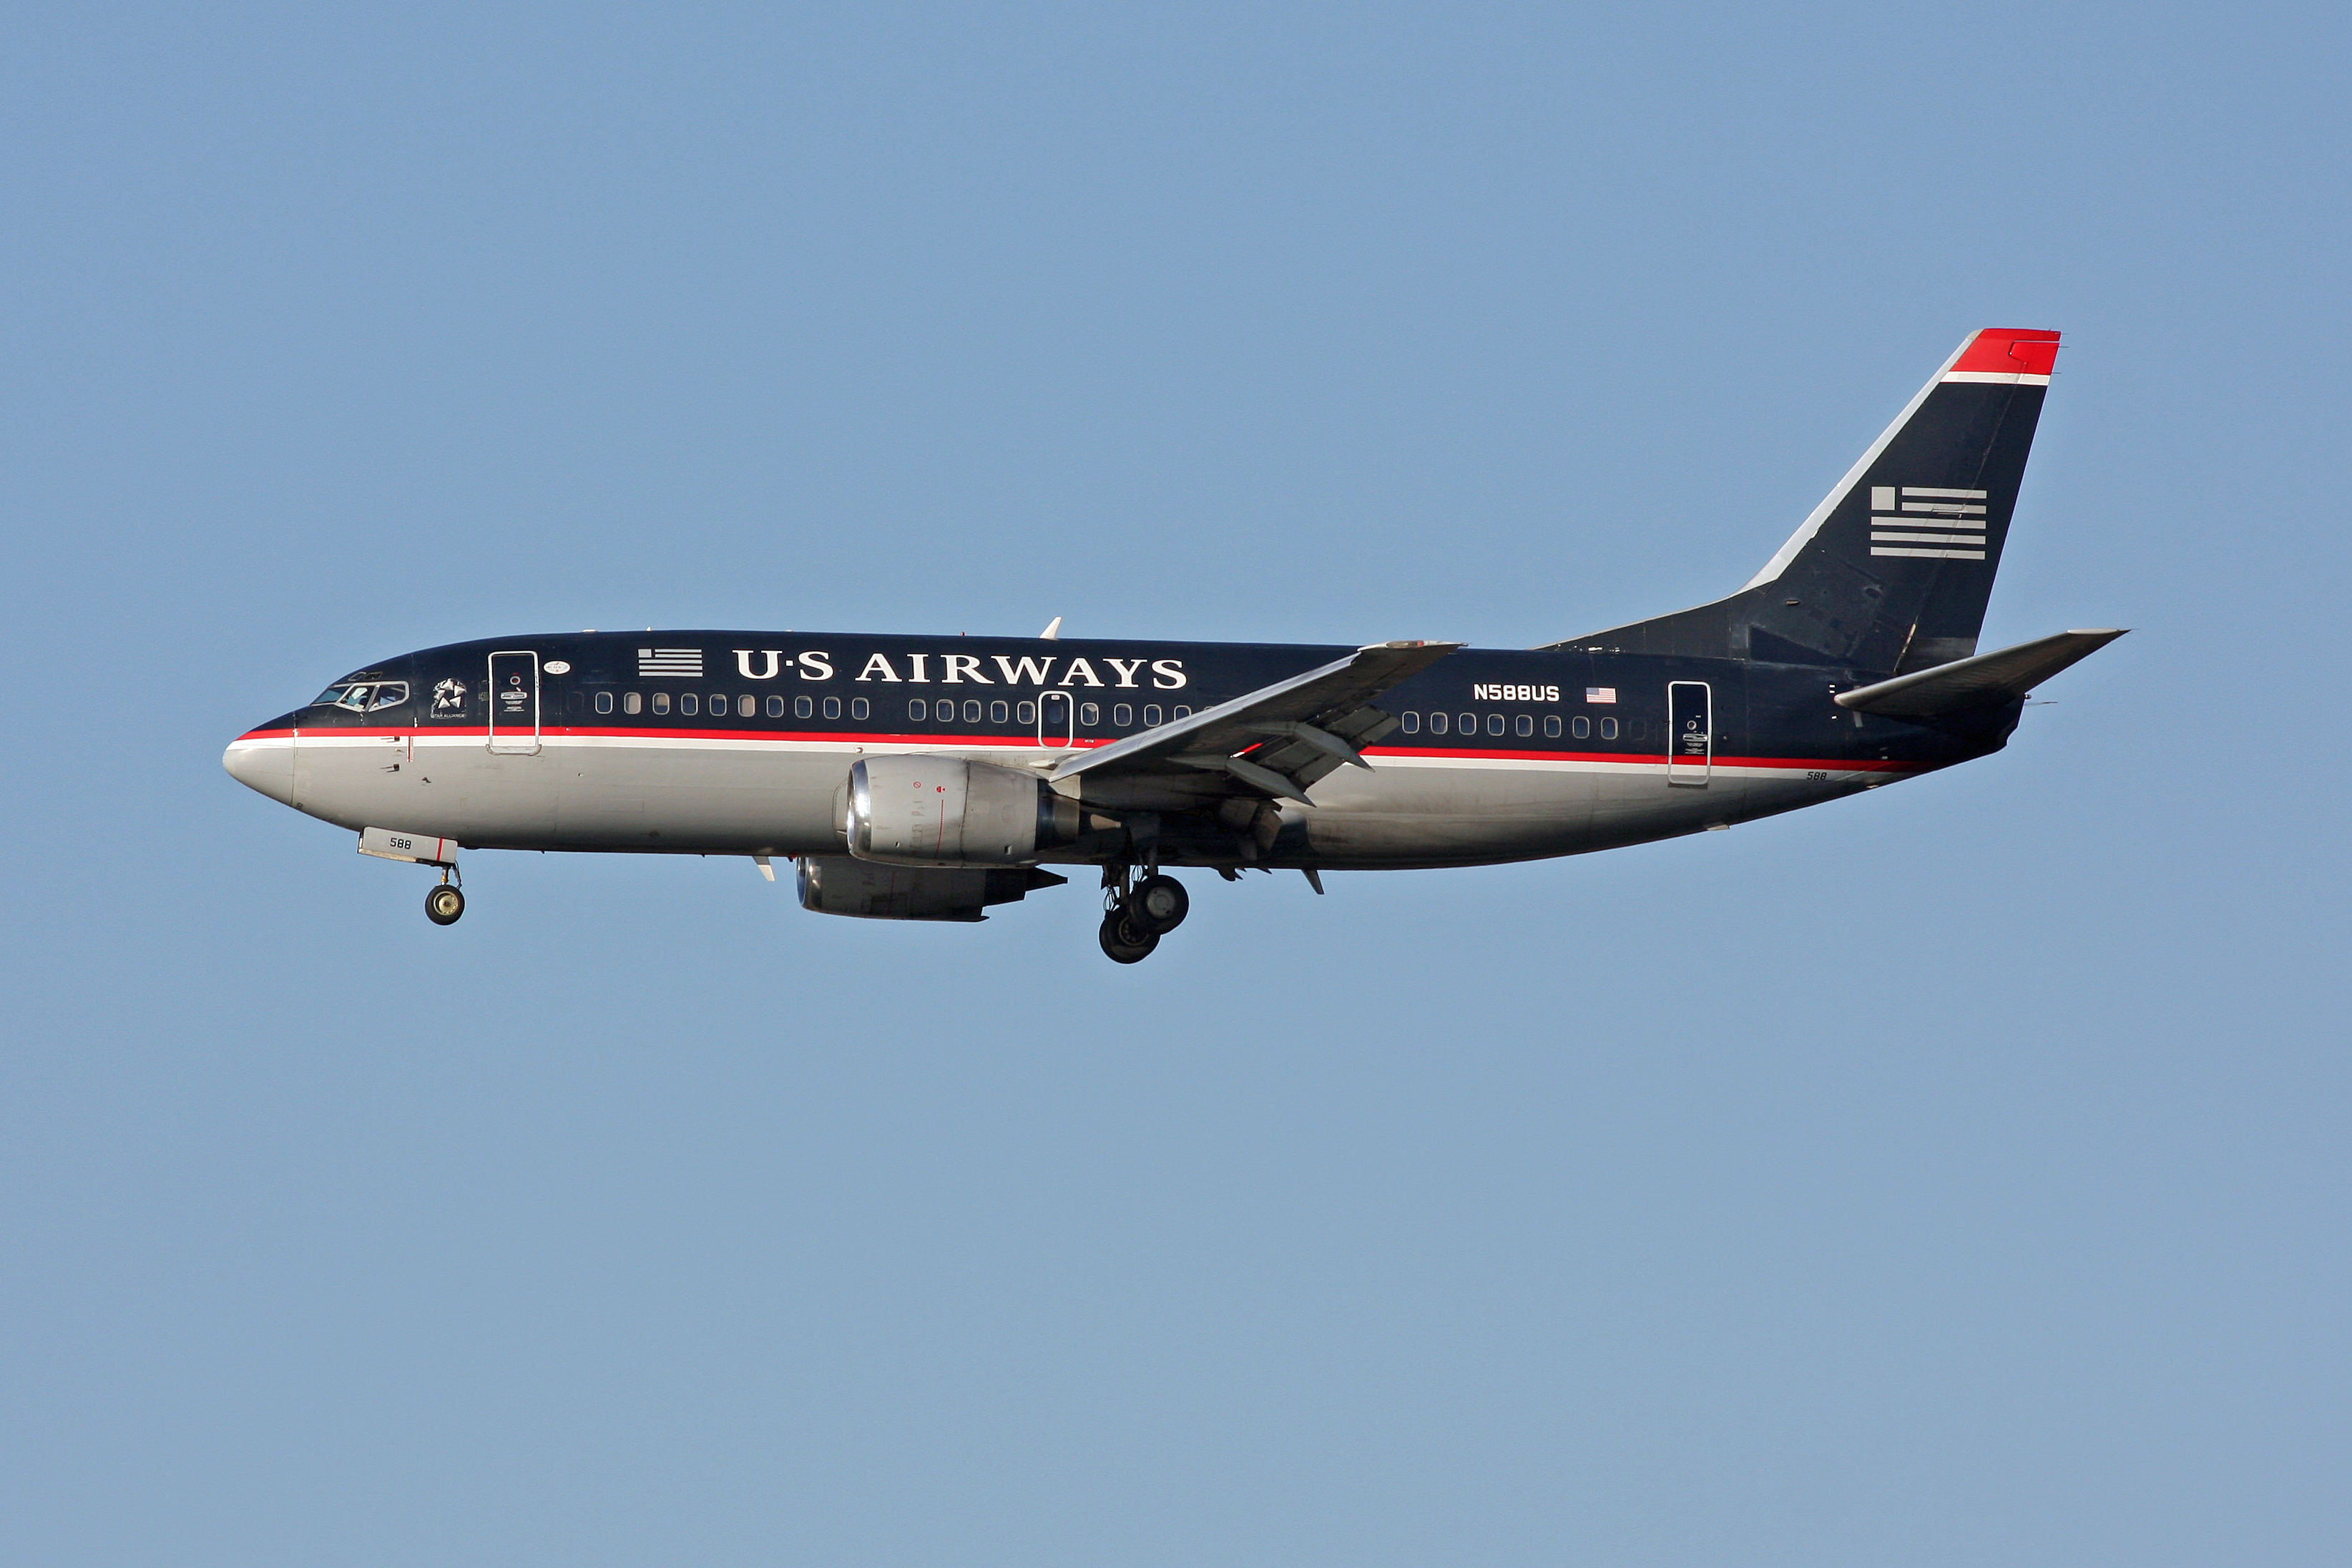 USAirways N588US 737